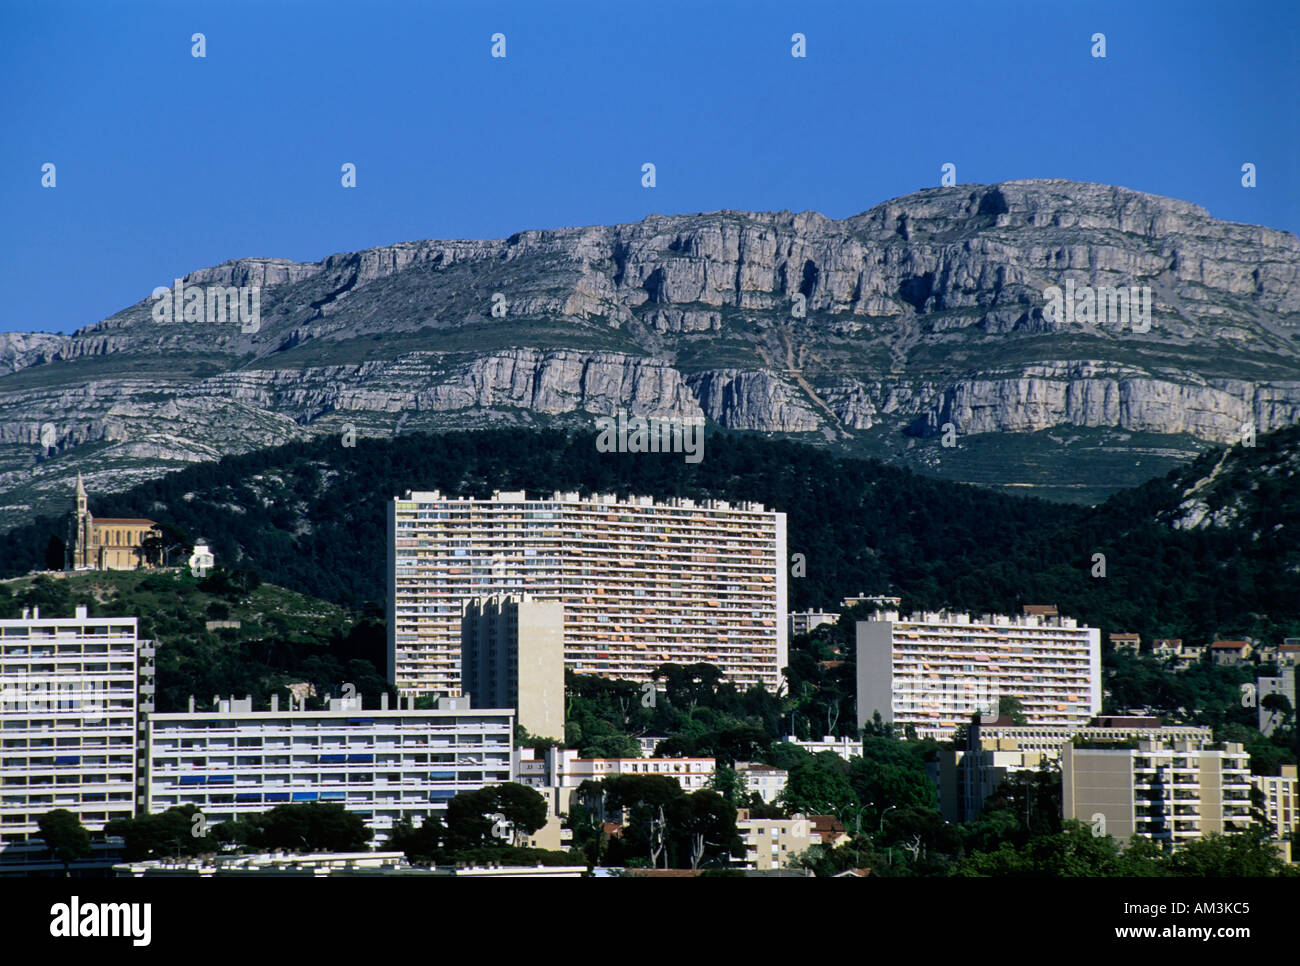 Frankreich Marseille Redon Bezirk mit Saint Joseph Du Redon Kirche auf einem Hügel, von der Cité Radieuse von Le Corbusier Architekten Stockfoto